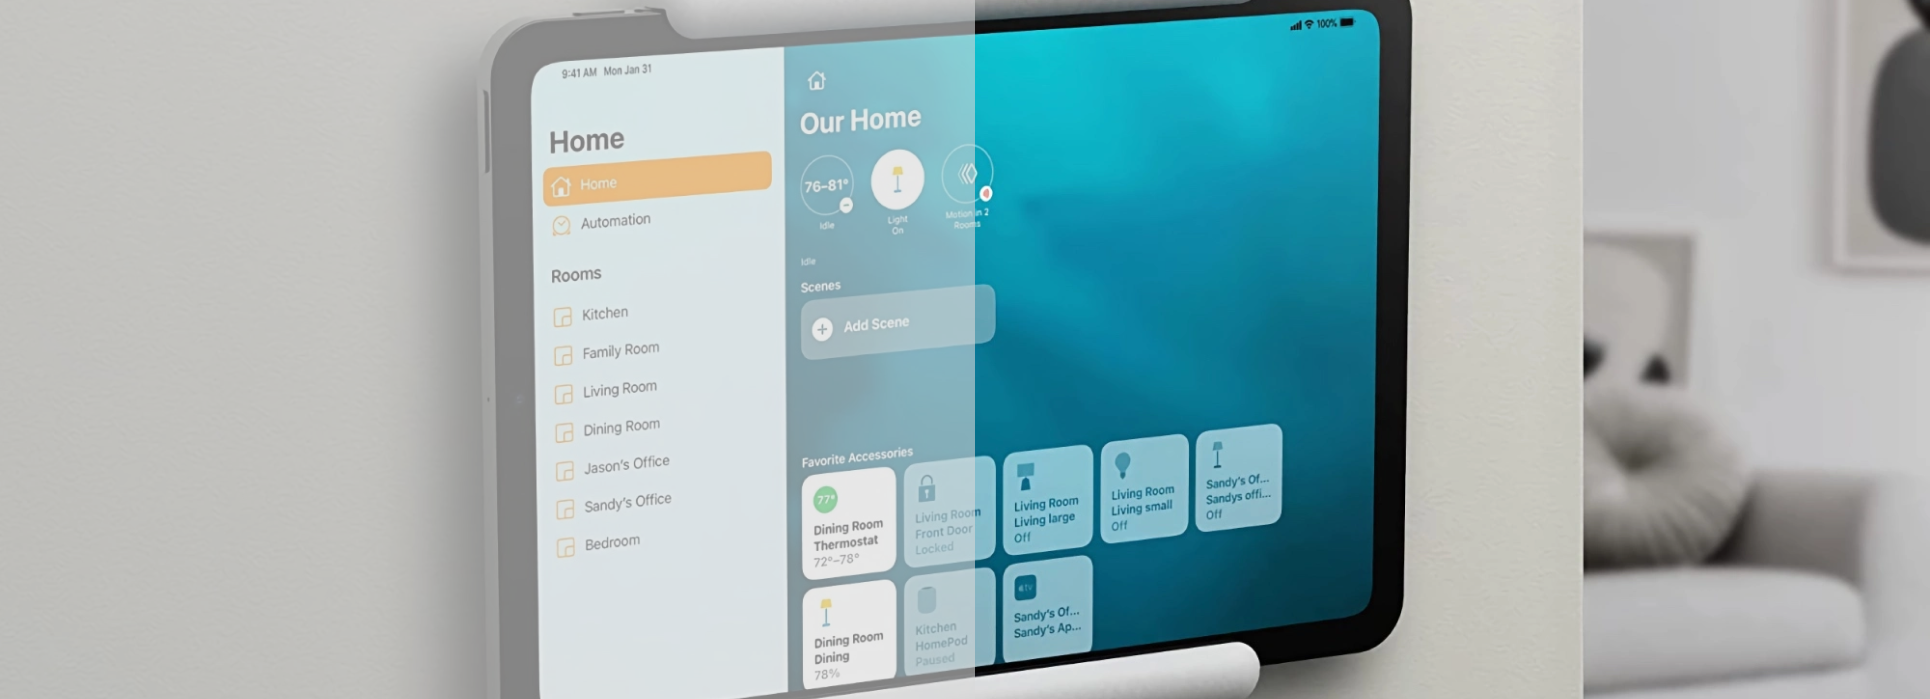 Come utilizzare iPad come smart home hub